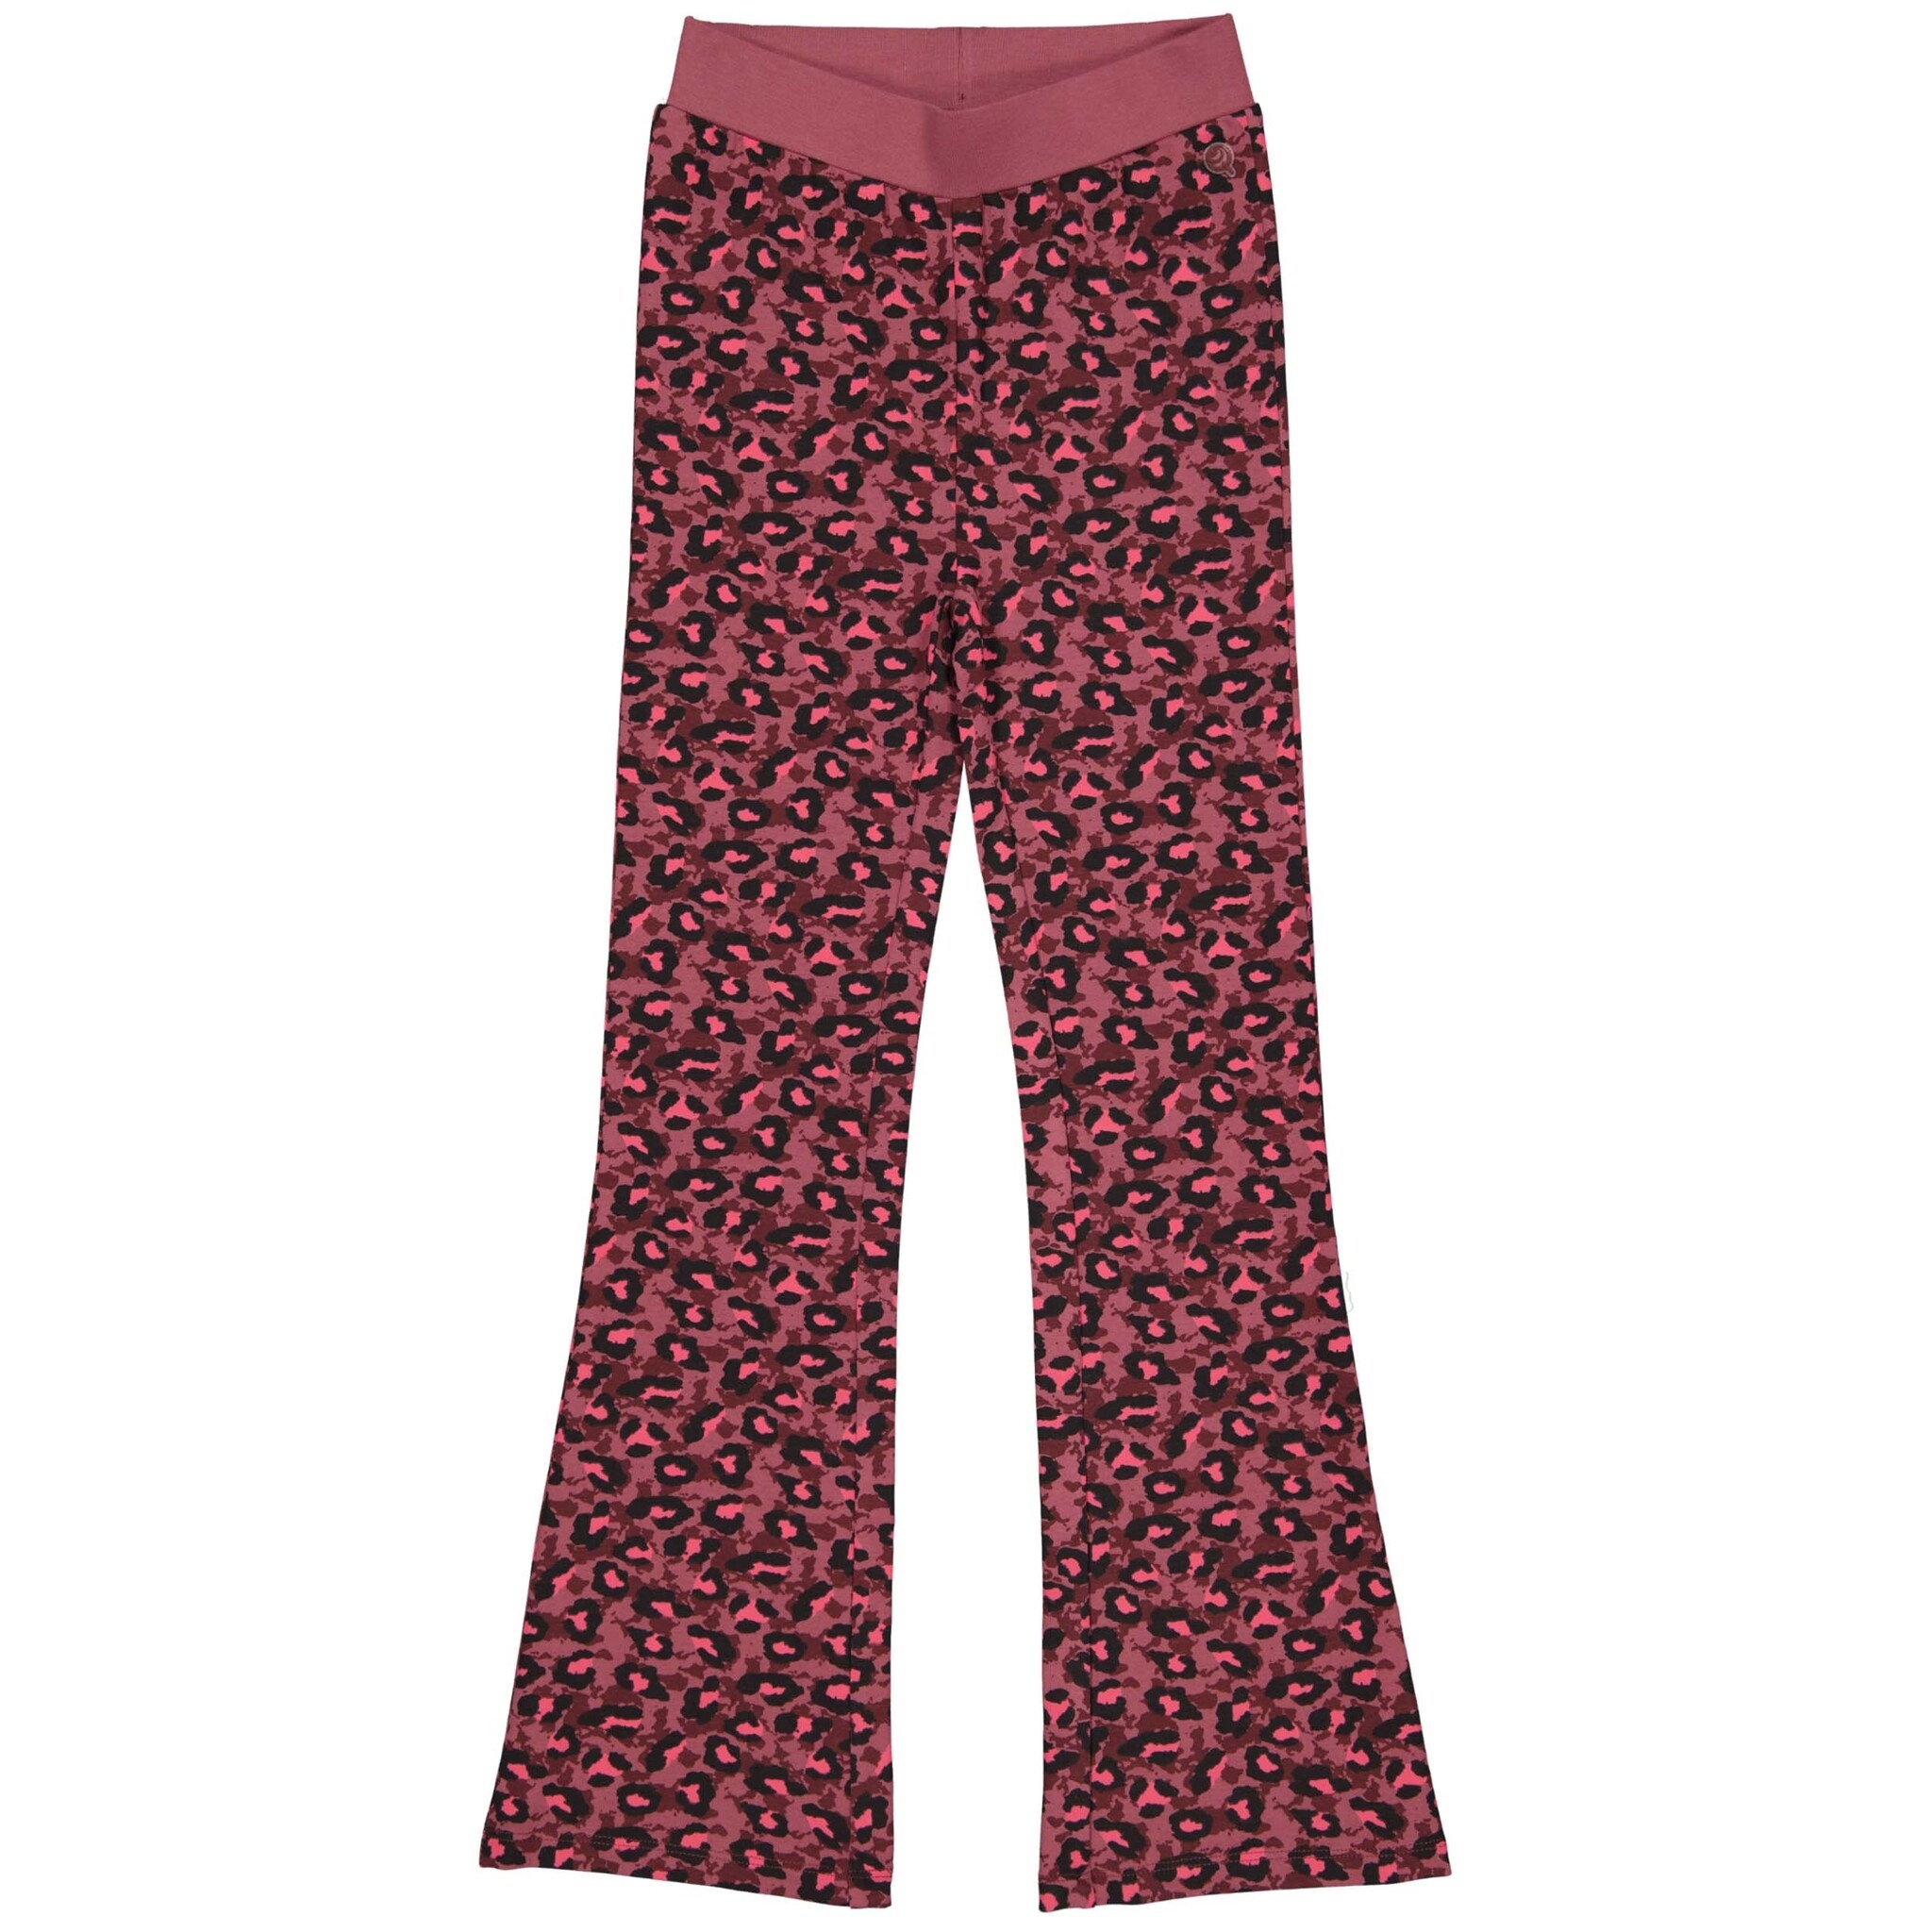 Quapi Meisjes flairbroek - Aymee - AOP luipaard roze